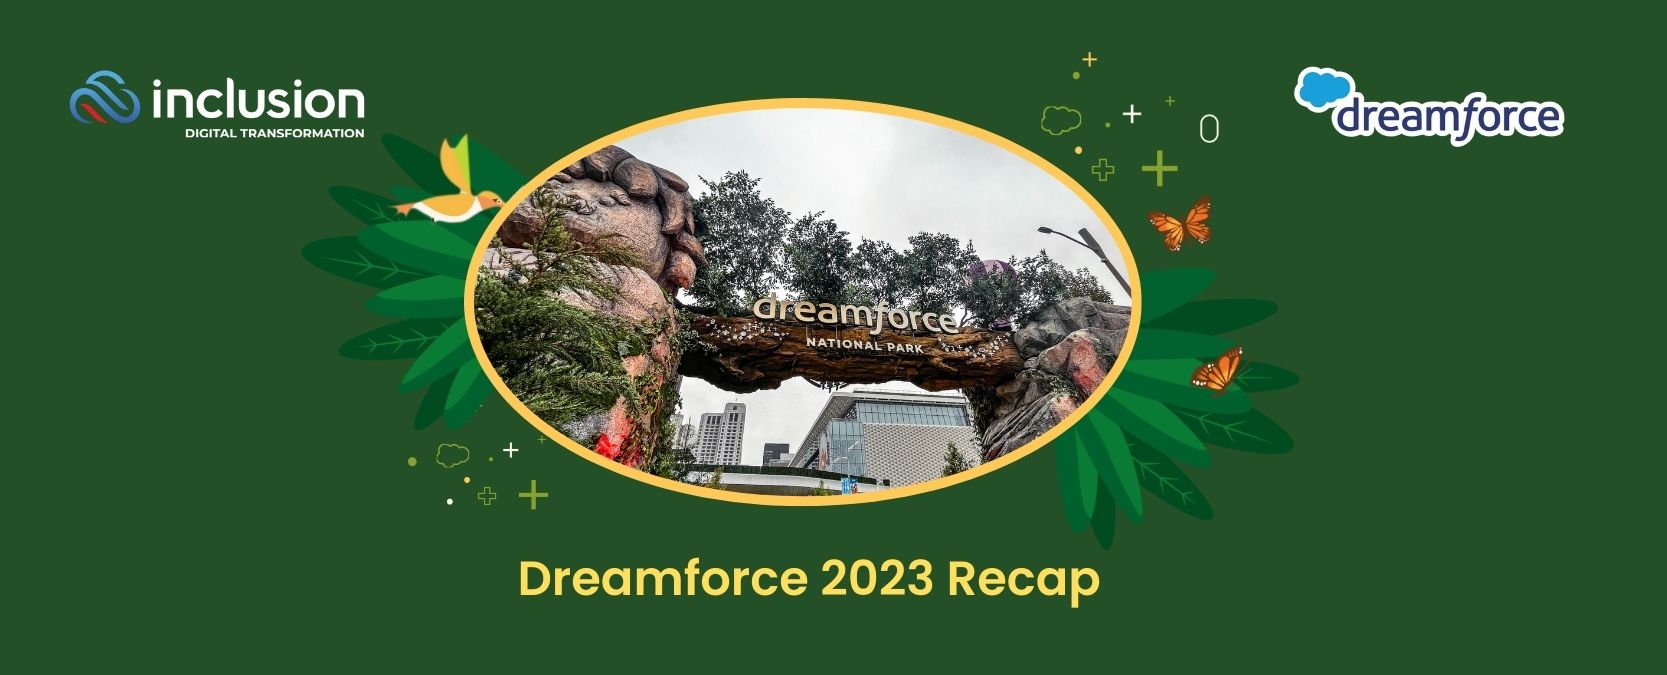 Dreamforce 2023 Recap